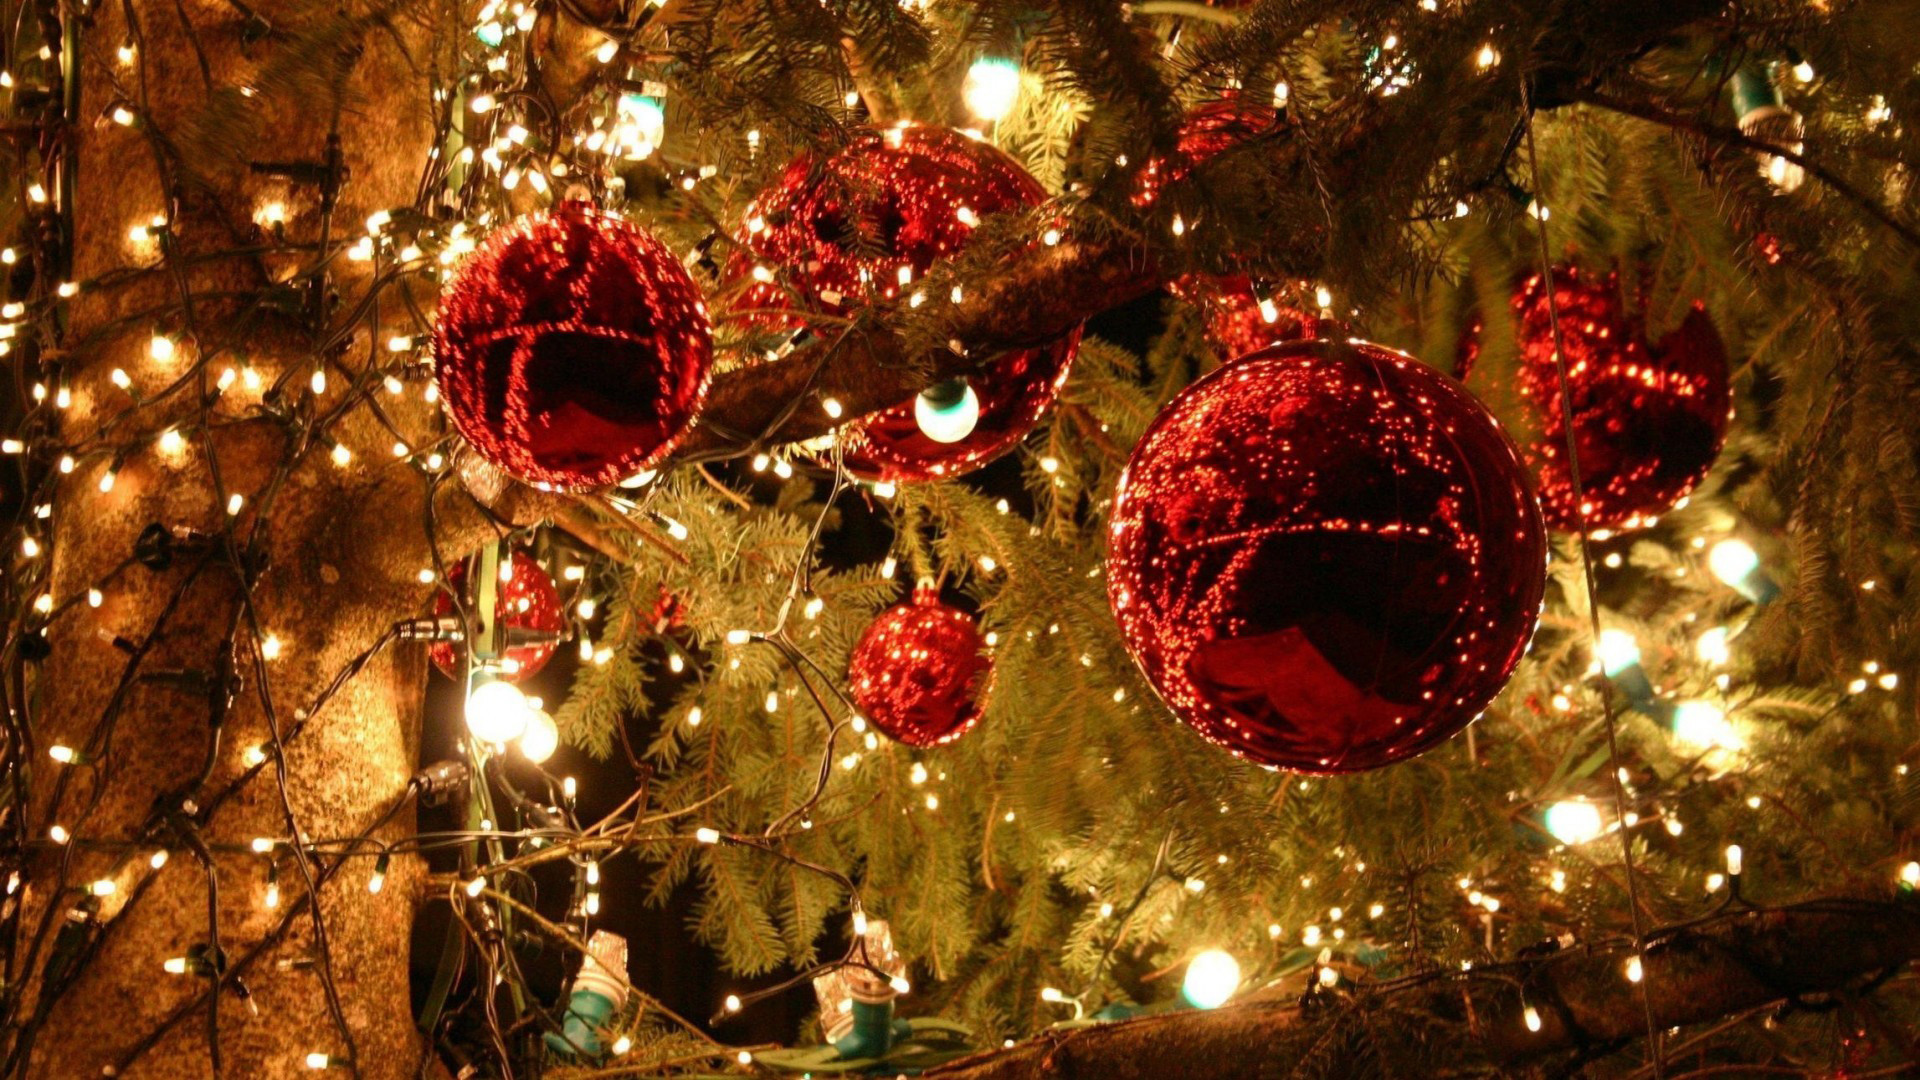 sfondi di natale hd,ornamento di natale,decorazione natalizia,natale,albero di natale,albero